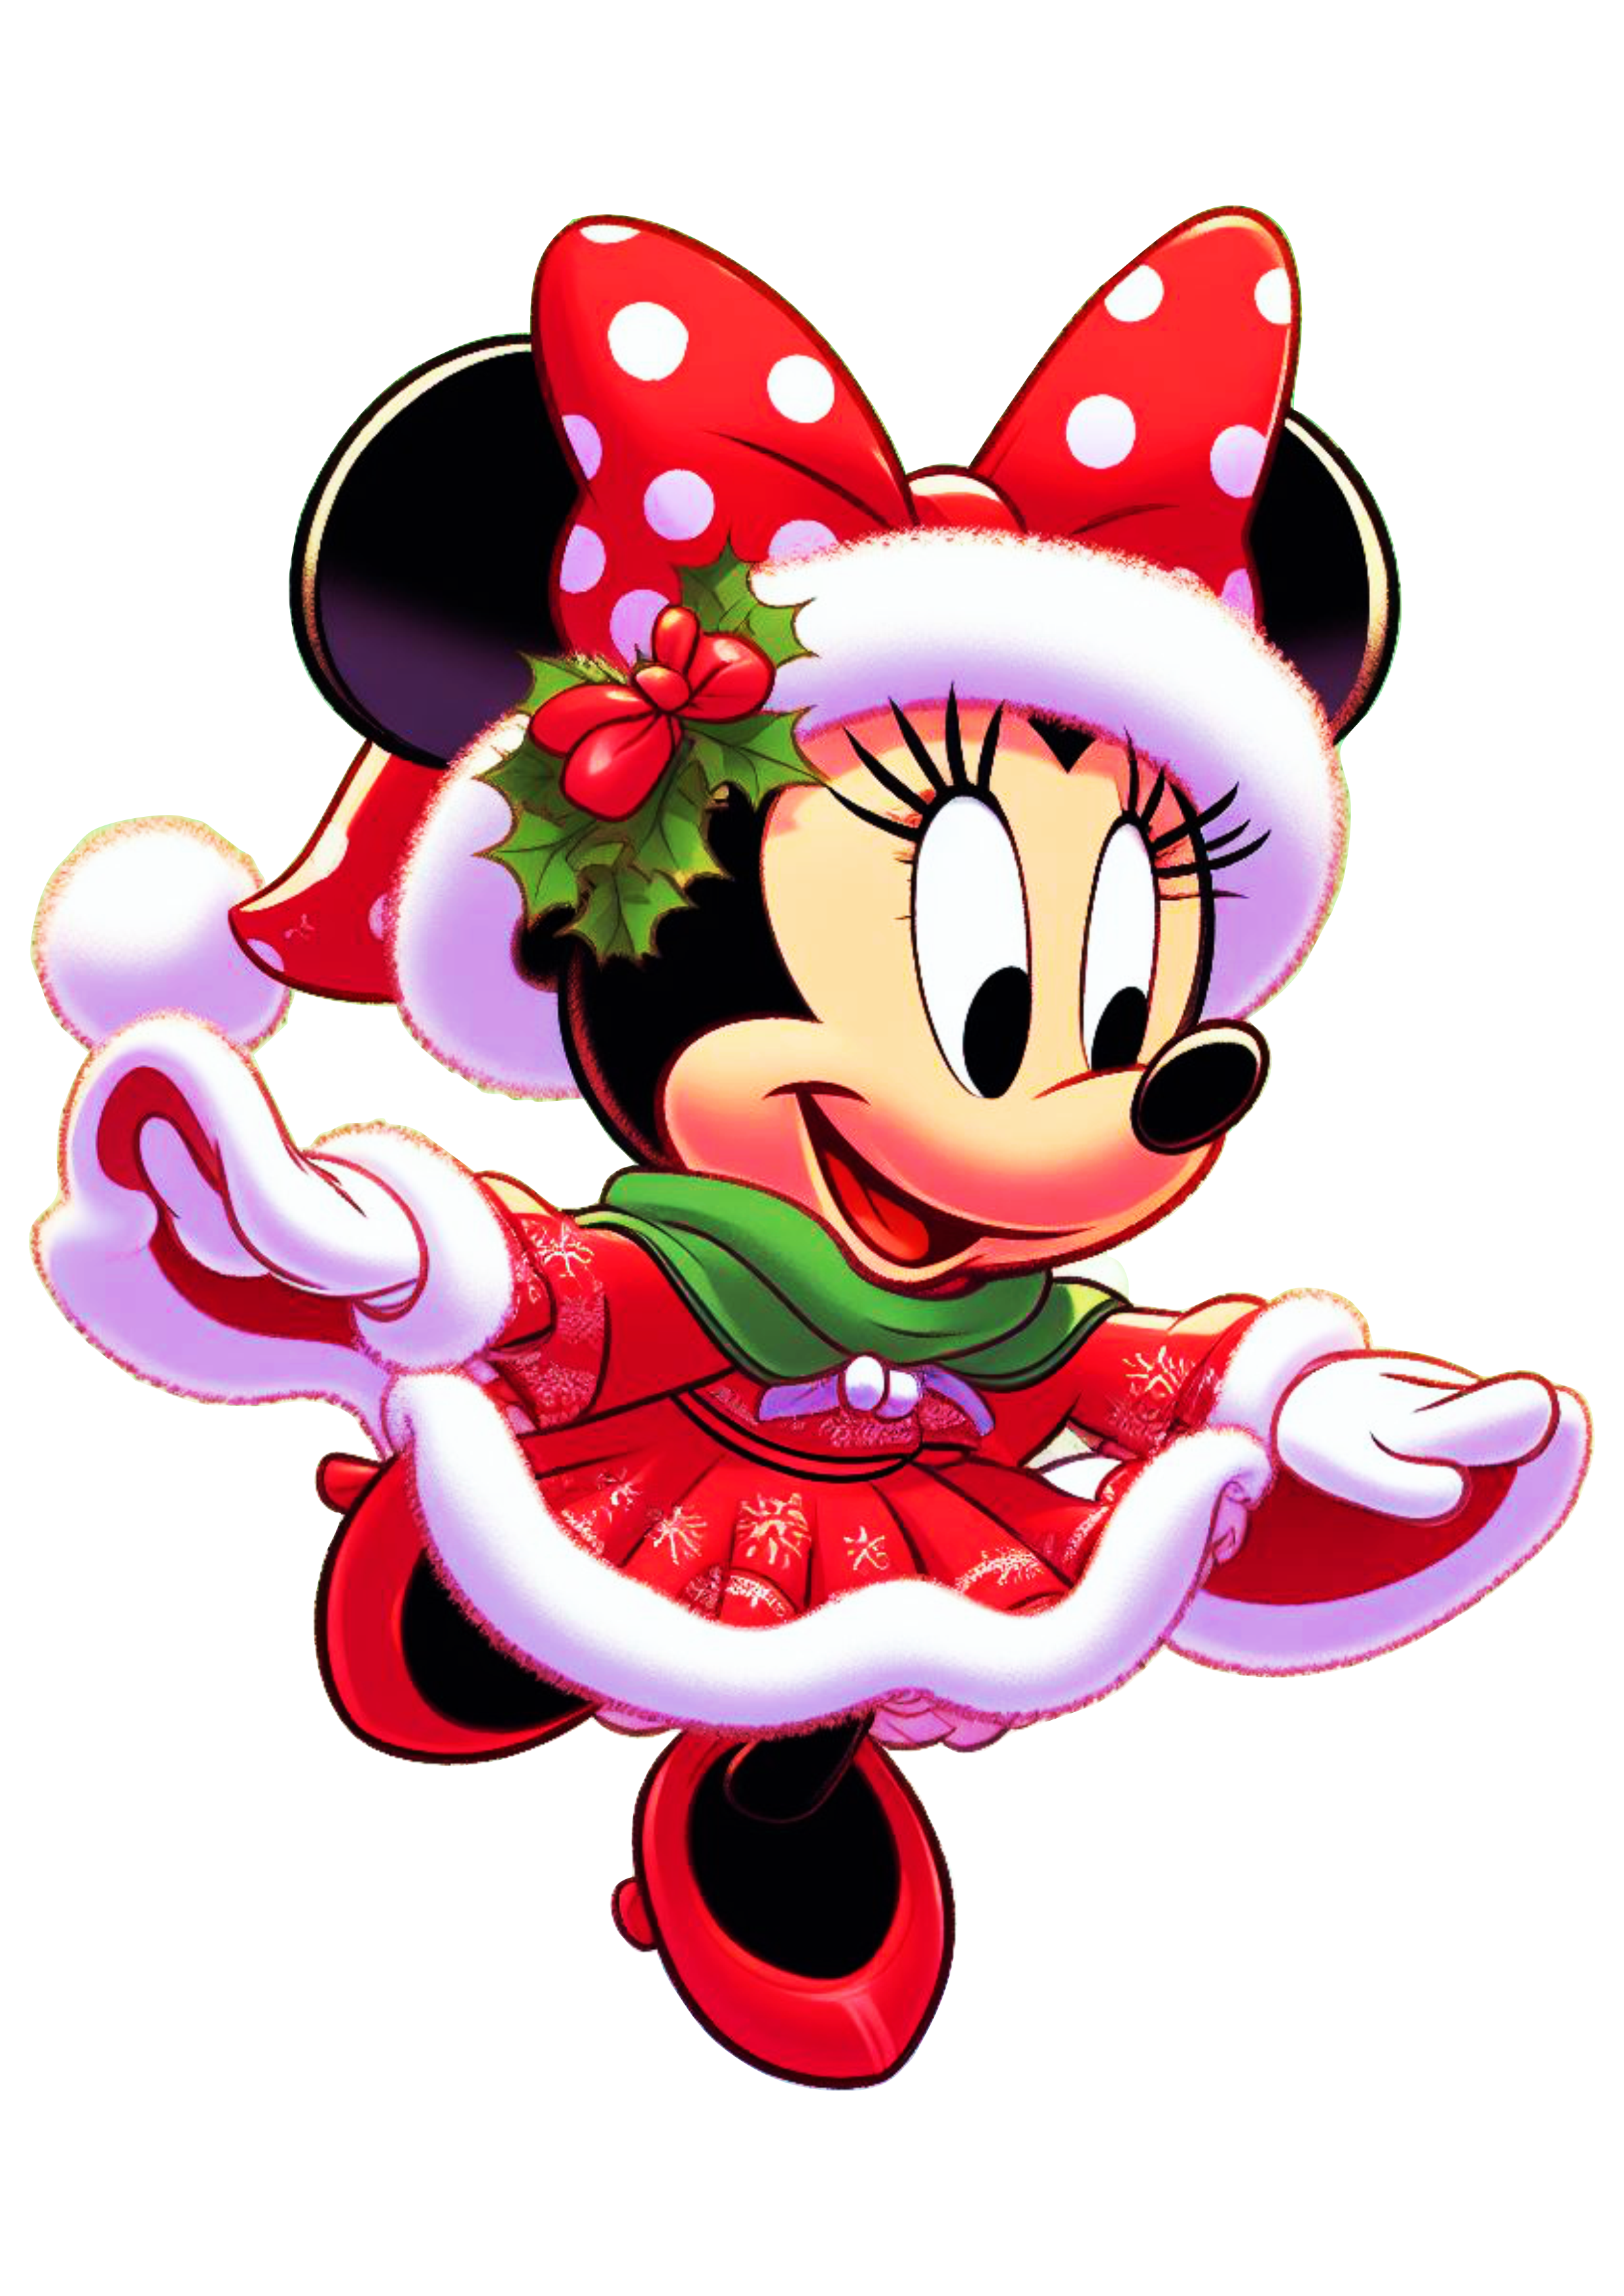 Minnie Mouse vermelha com vestido de natal desenho infantil png